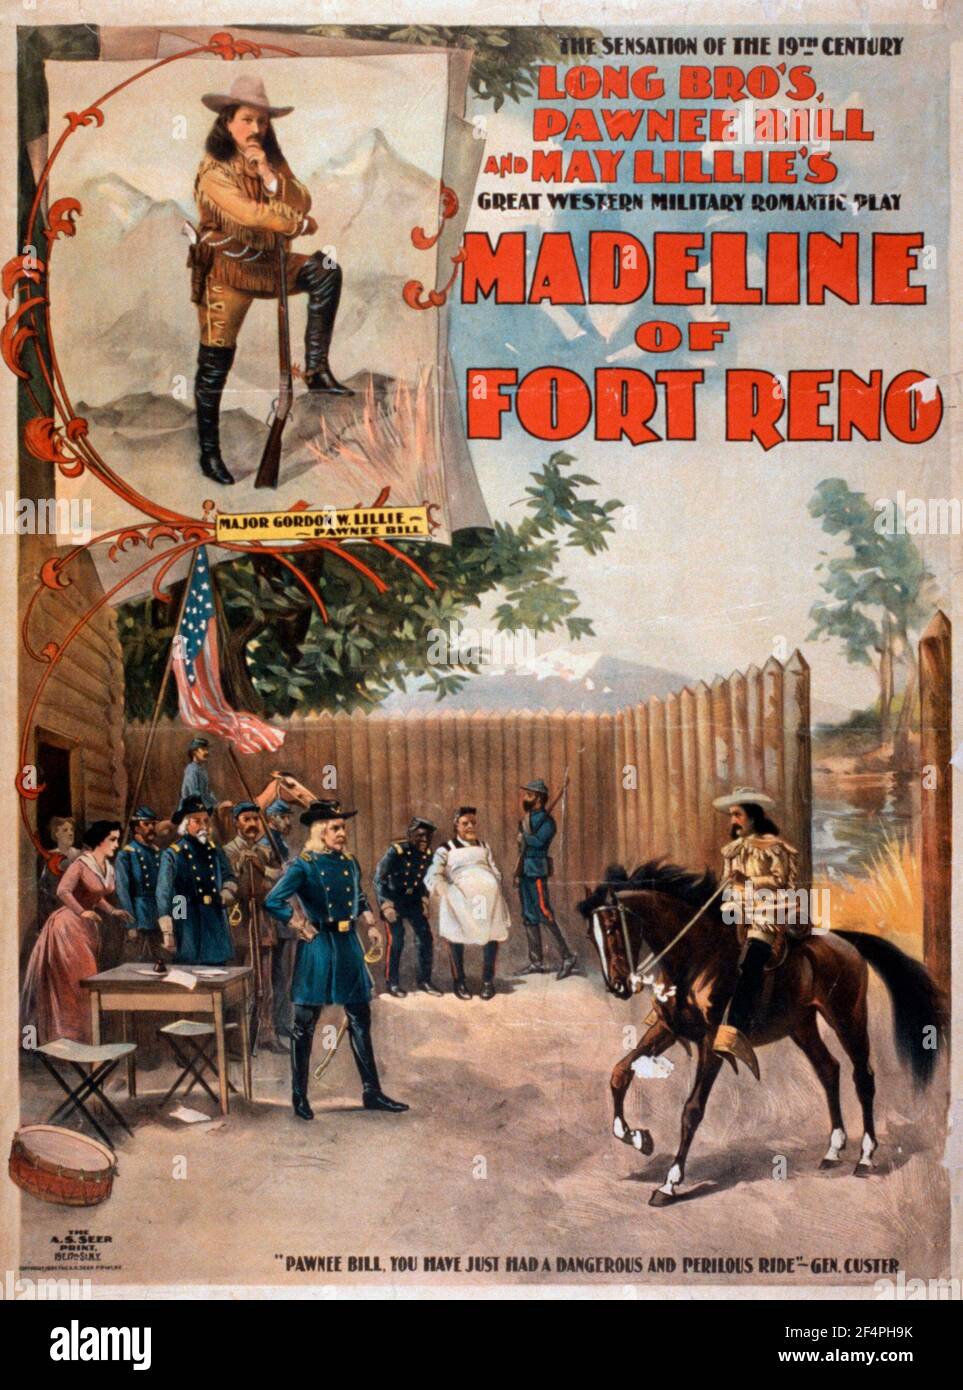 Madeline de fort Reno la sensation du XIXe siècle, long Bro's, Pawnee Bill et May Lillie's grand jeu militaire romantique de l'Ouest, vers 1897 Banque D'Images